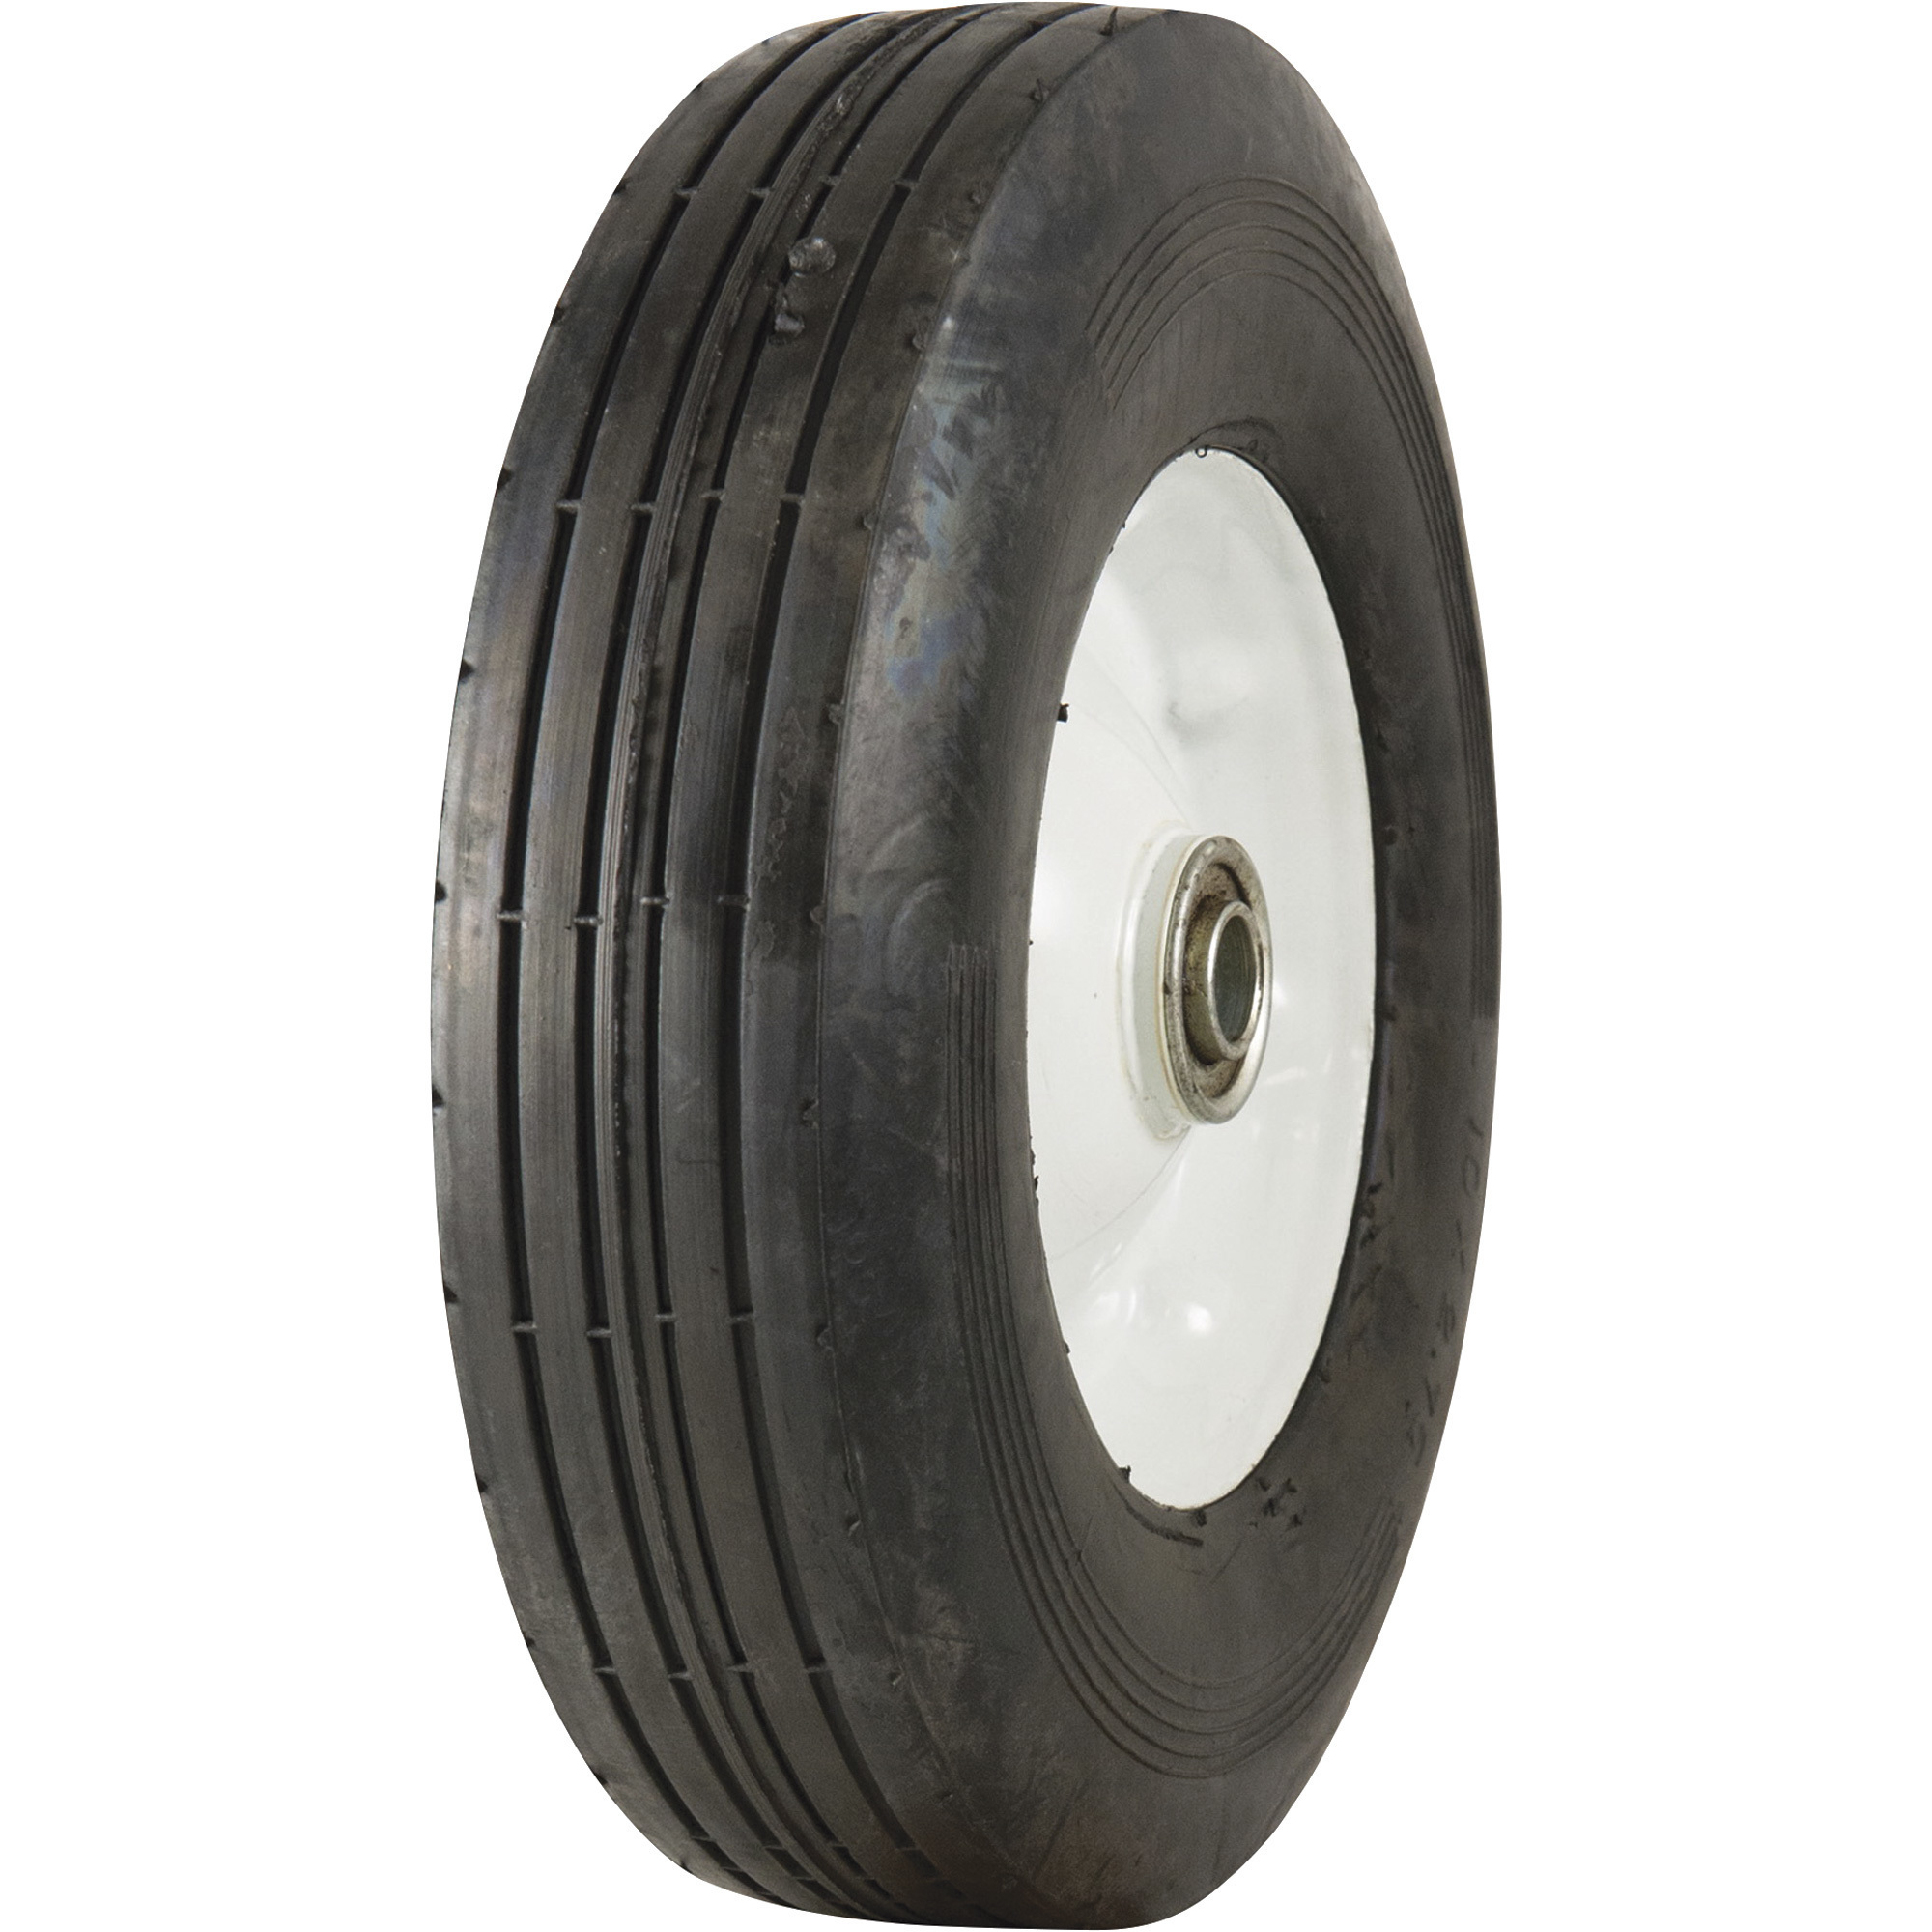 Marathon Tires Flat-Free Semi-Pneumatic Tire â 5/8Inch Bore, 10 x 2.75Inch